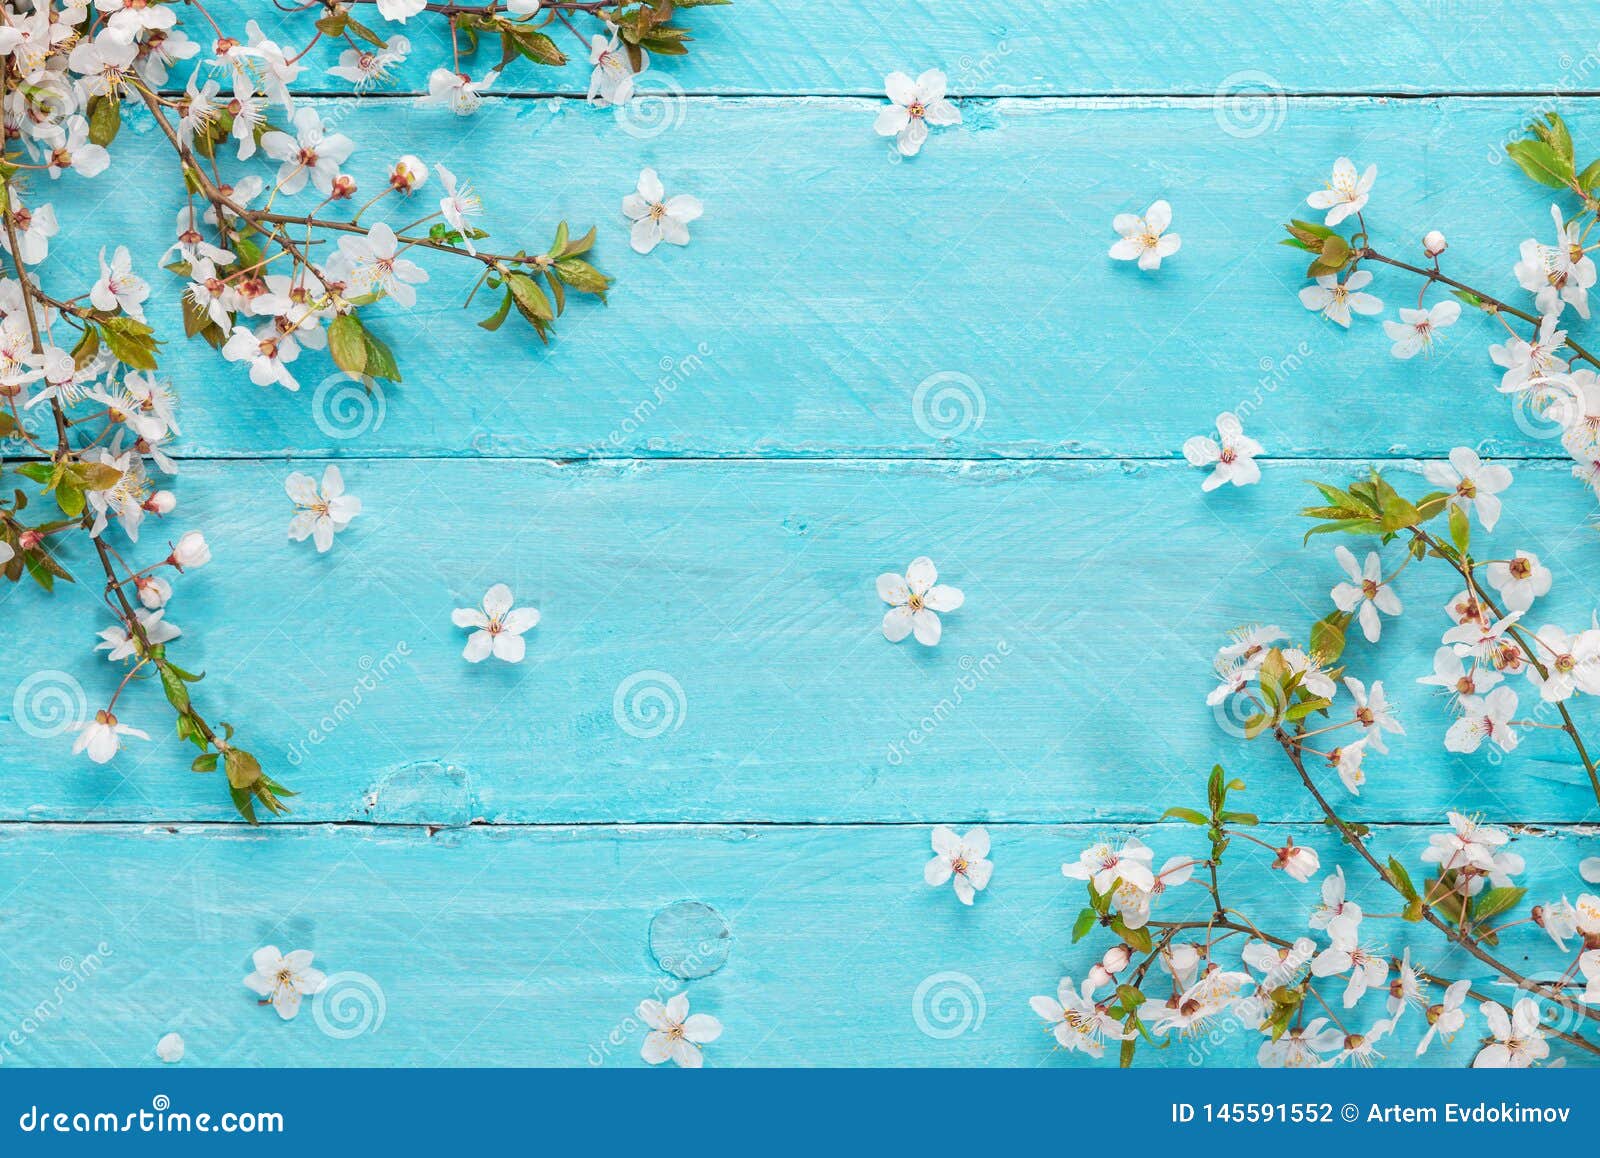 Hoa anh đào mùa xuân trên mặt bàn gỗ màu xanh. Góc nhìn từ trên xuống. Phẳng - Bức ảnh thiên nhiên mùa xuân mang lại cho bạn một cảm giác tươi mới và thú vị. Với những cành hoa anh đào trắng tinh khôi, những bông hoa màu xanh ngọc bích và mặt bàn gỗ tự nhiên, hình ảnh này rất đẹp và dễ chịu cho mắt.